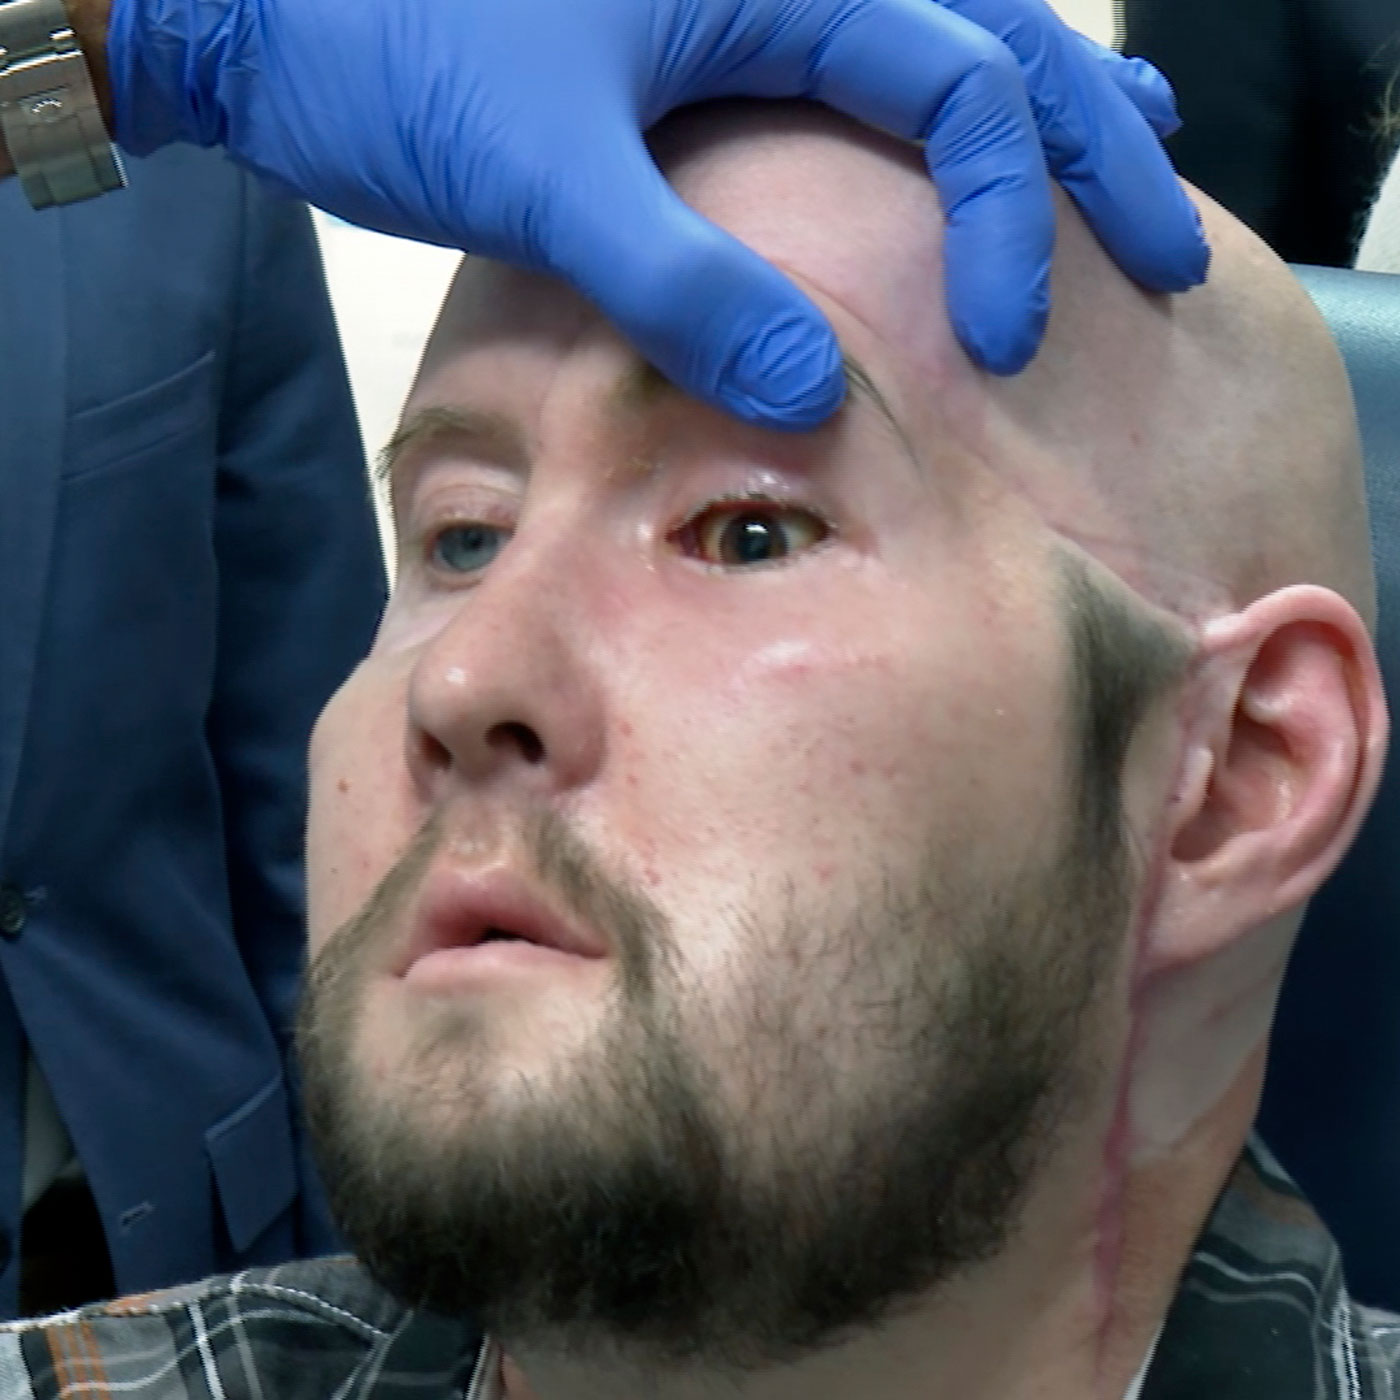 Augentransplantation - Wie realistisch ist das?